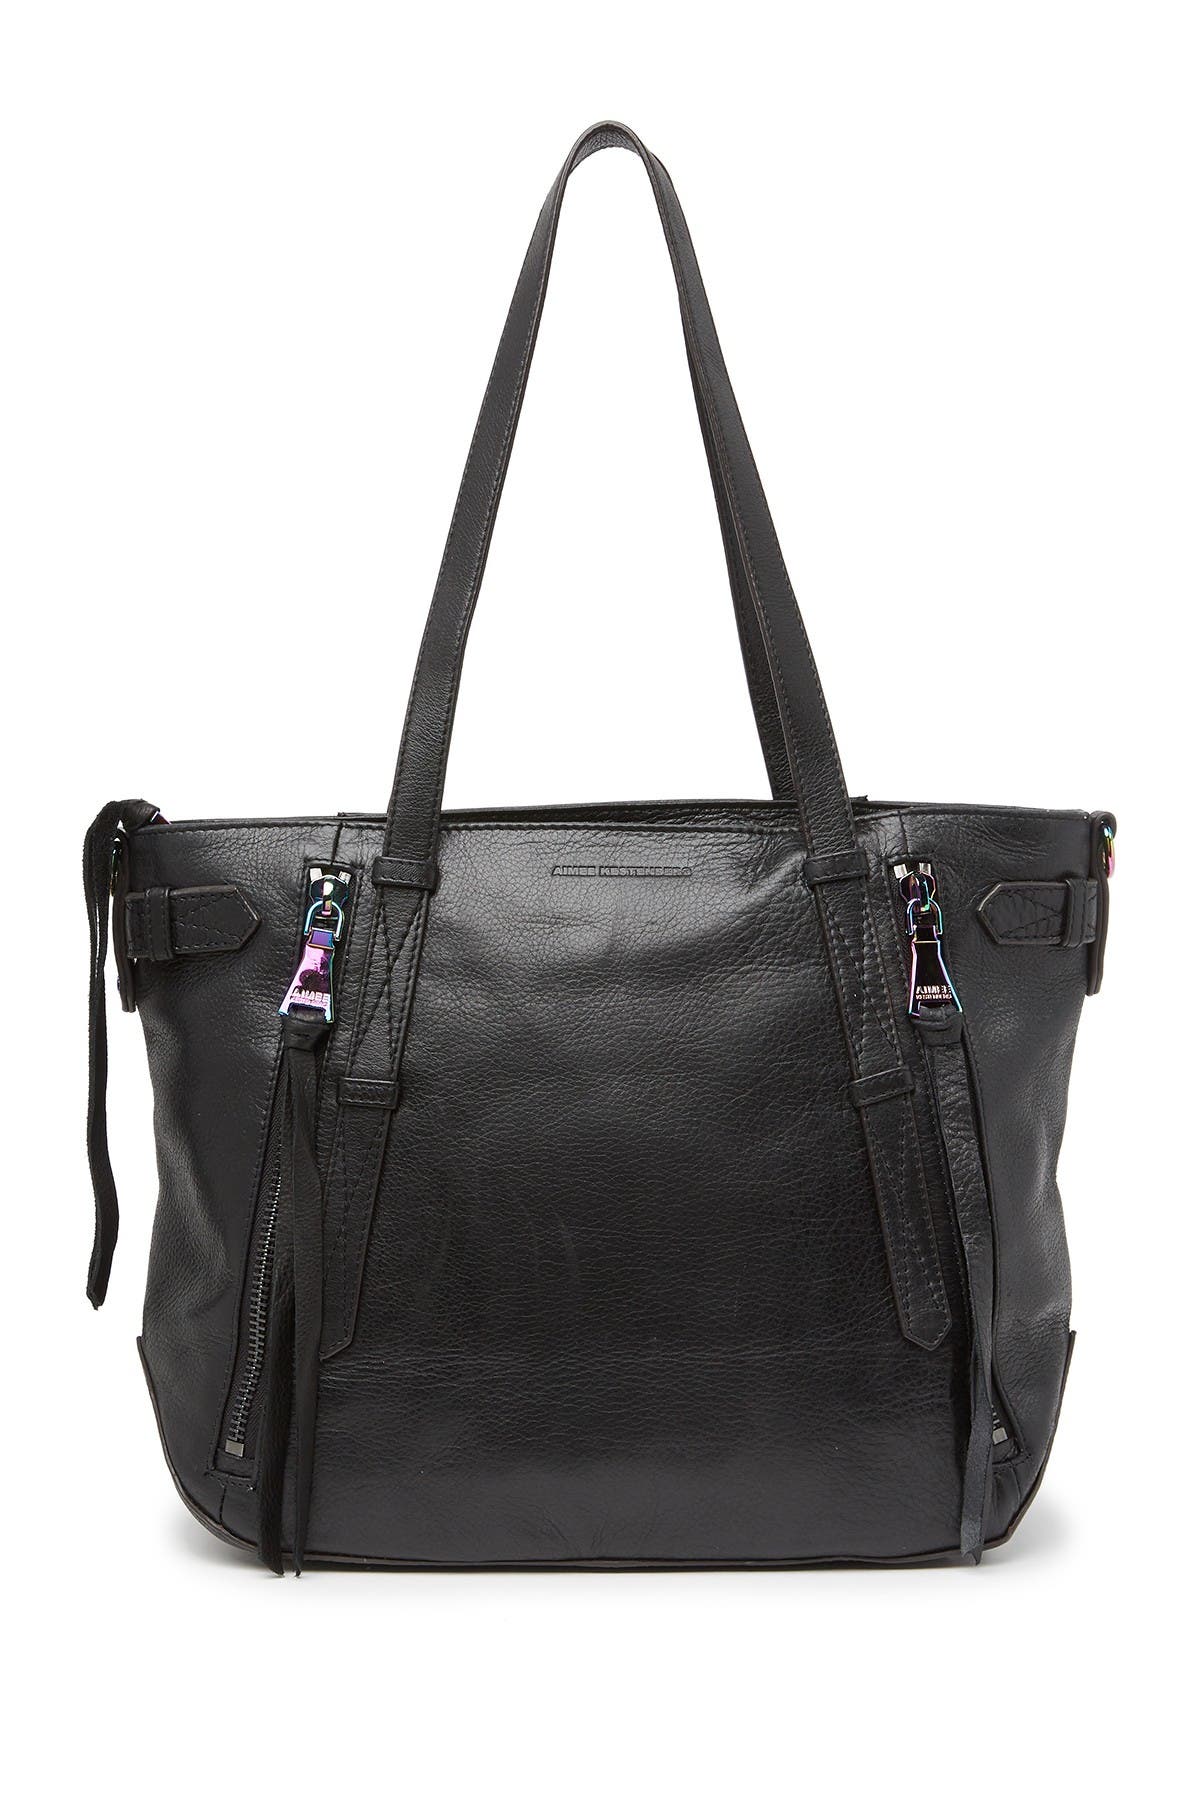 Aimee Kestenberg | City Slicker Leather Tote Bag | Nordstrom Rack